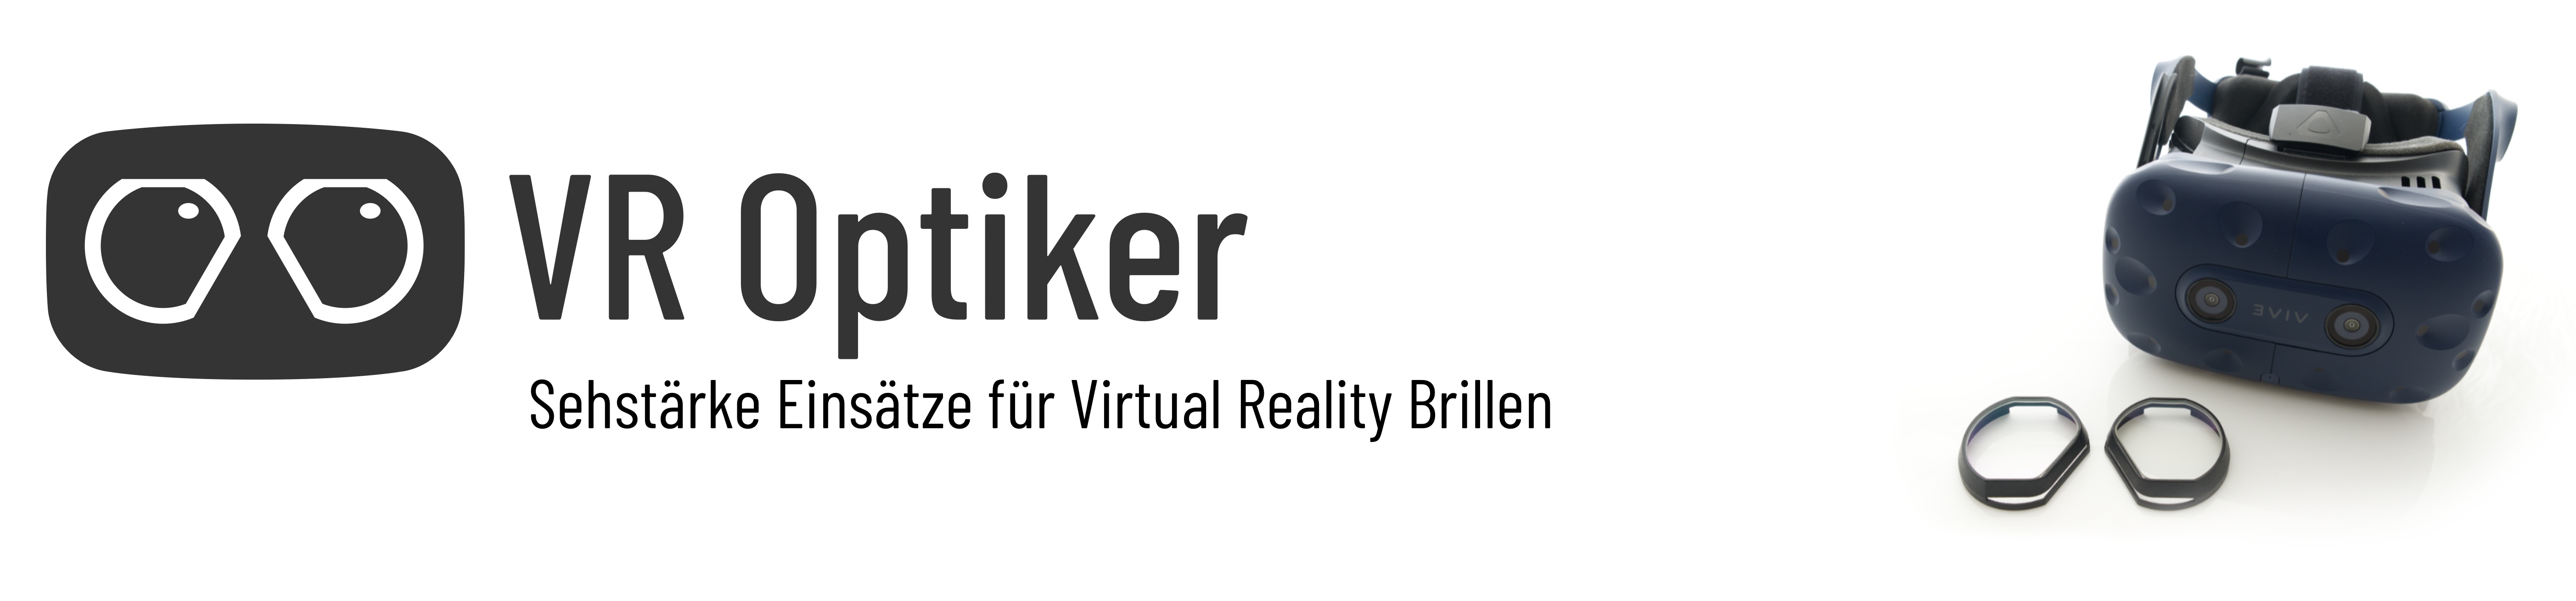 VR Optiker - Sehstärke Einsätze für Virtual Reality Brillen